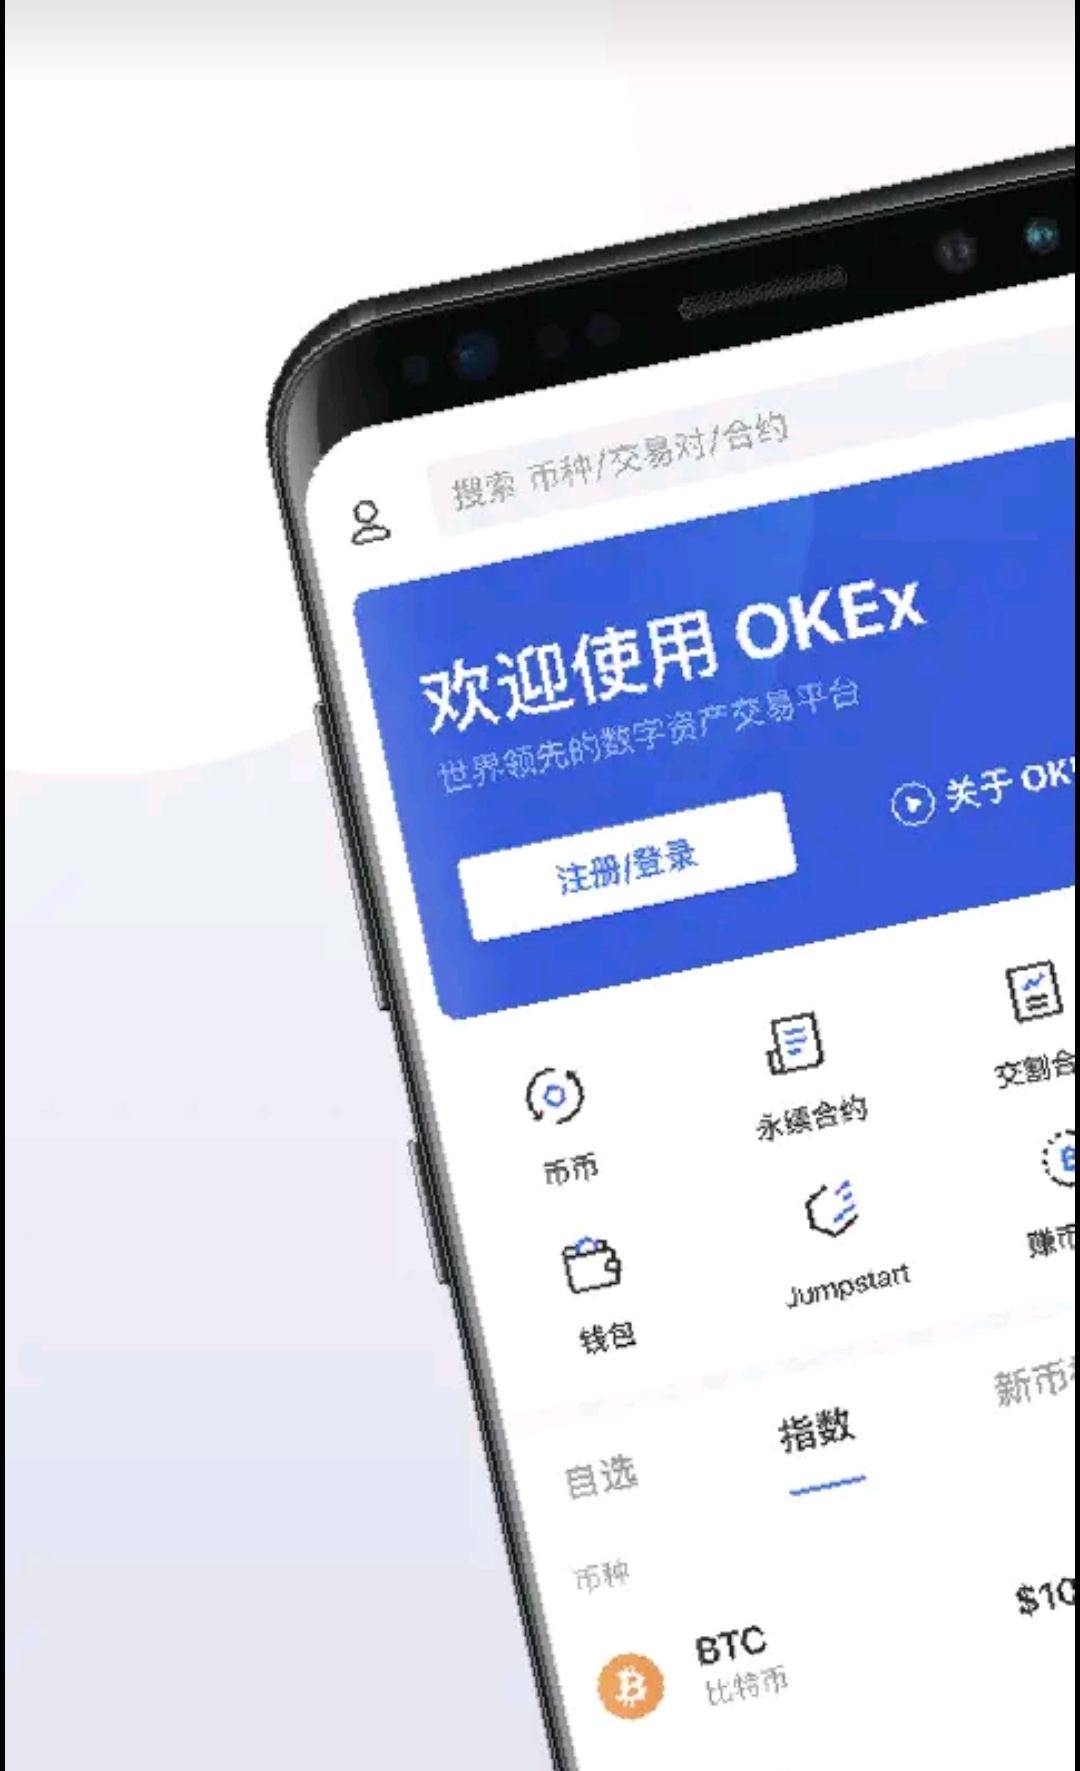 下载中国移动_下载中国移动app安装_imtoken在中国如何下载